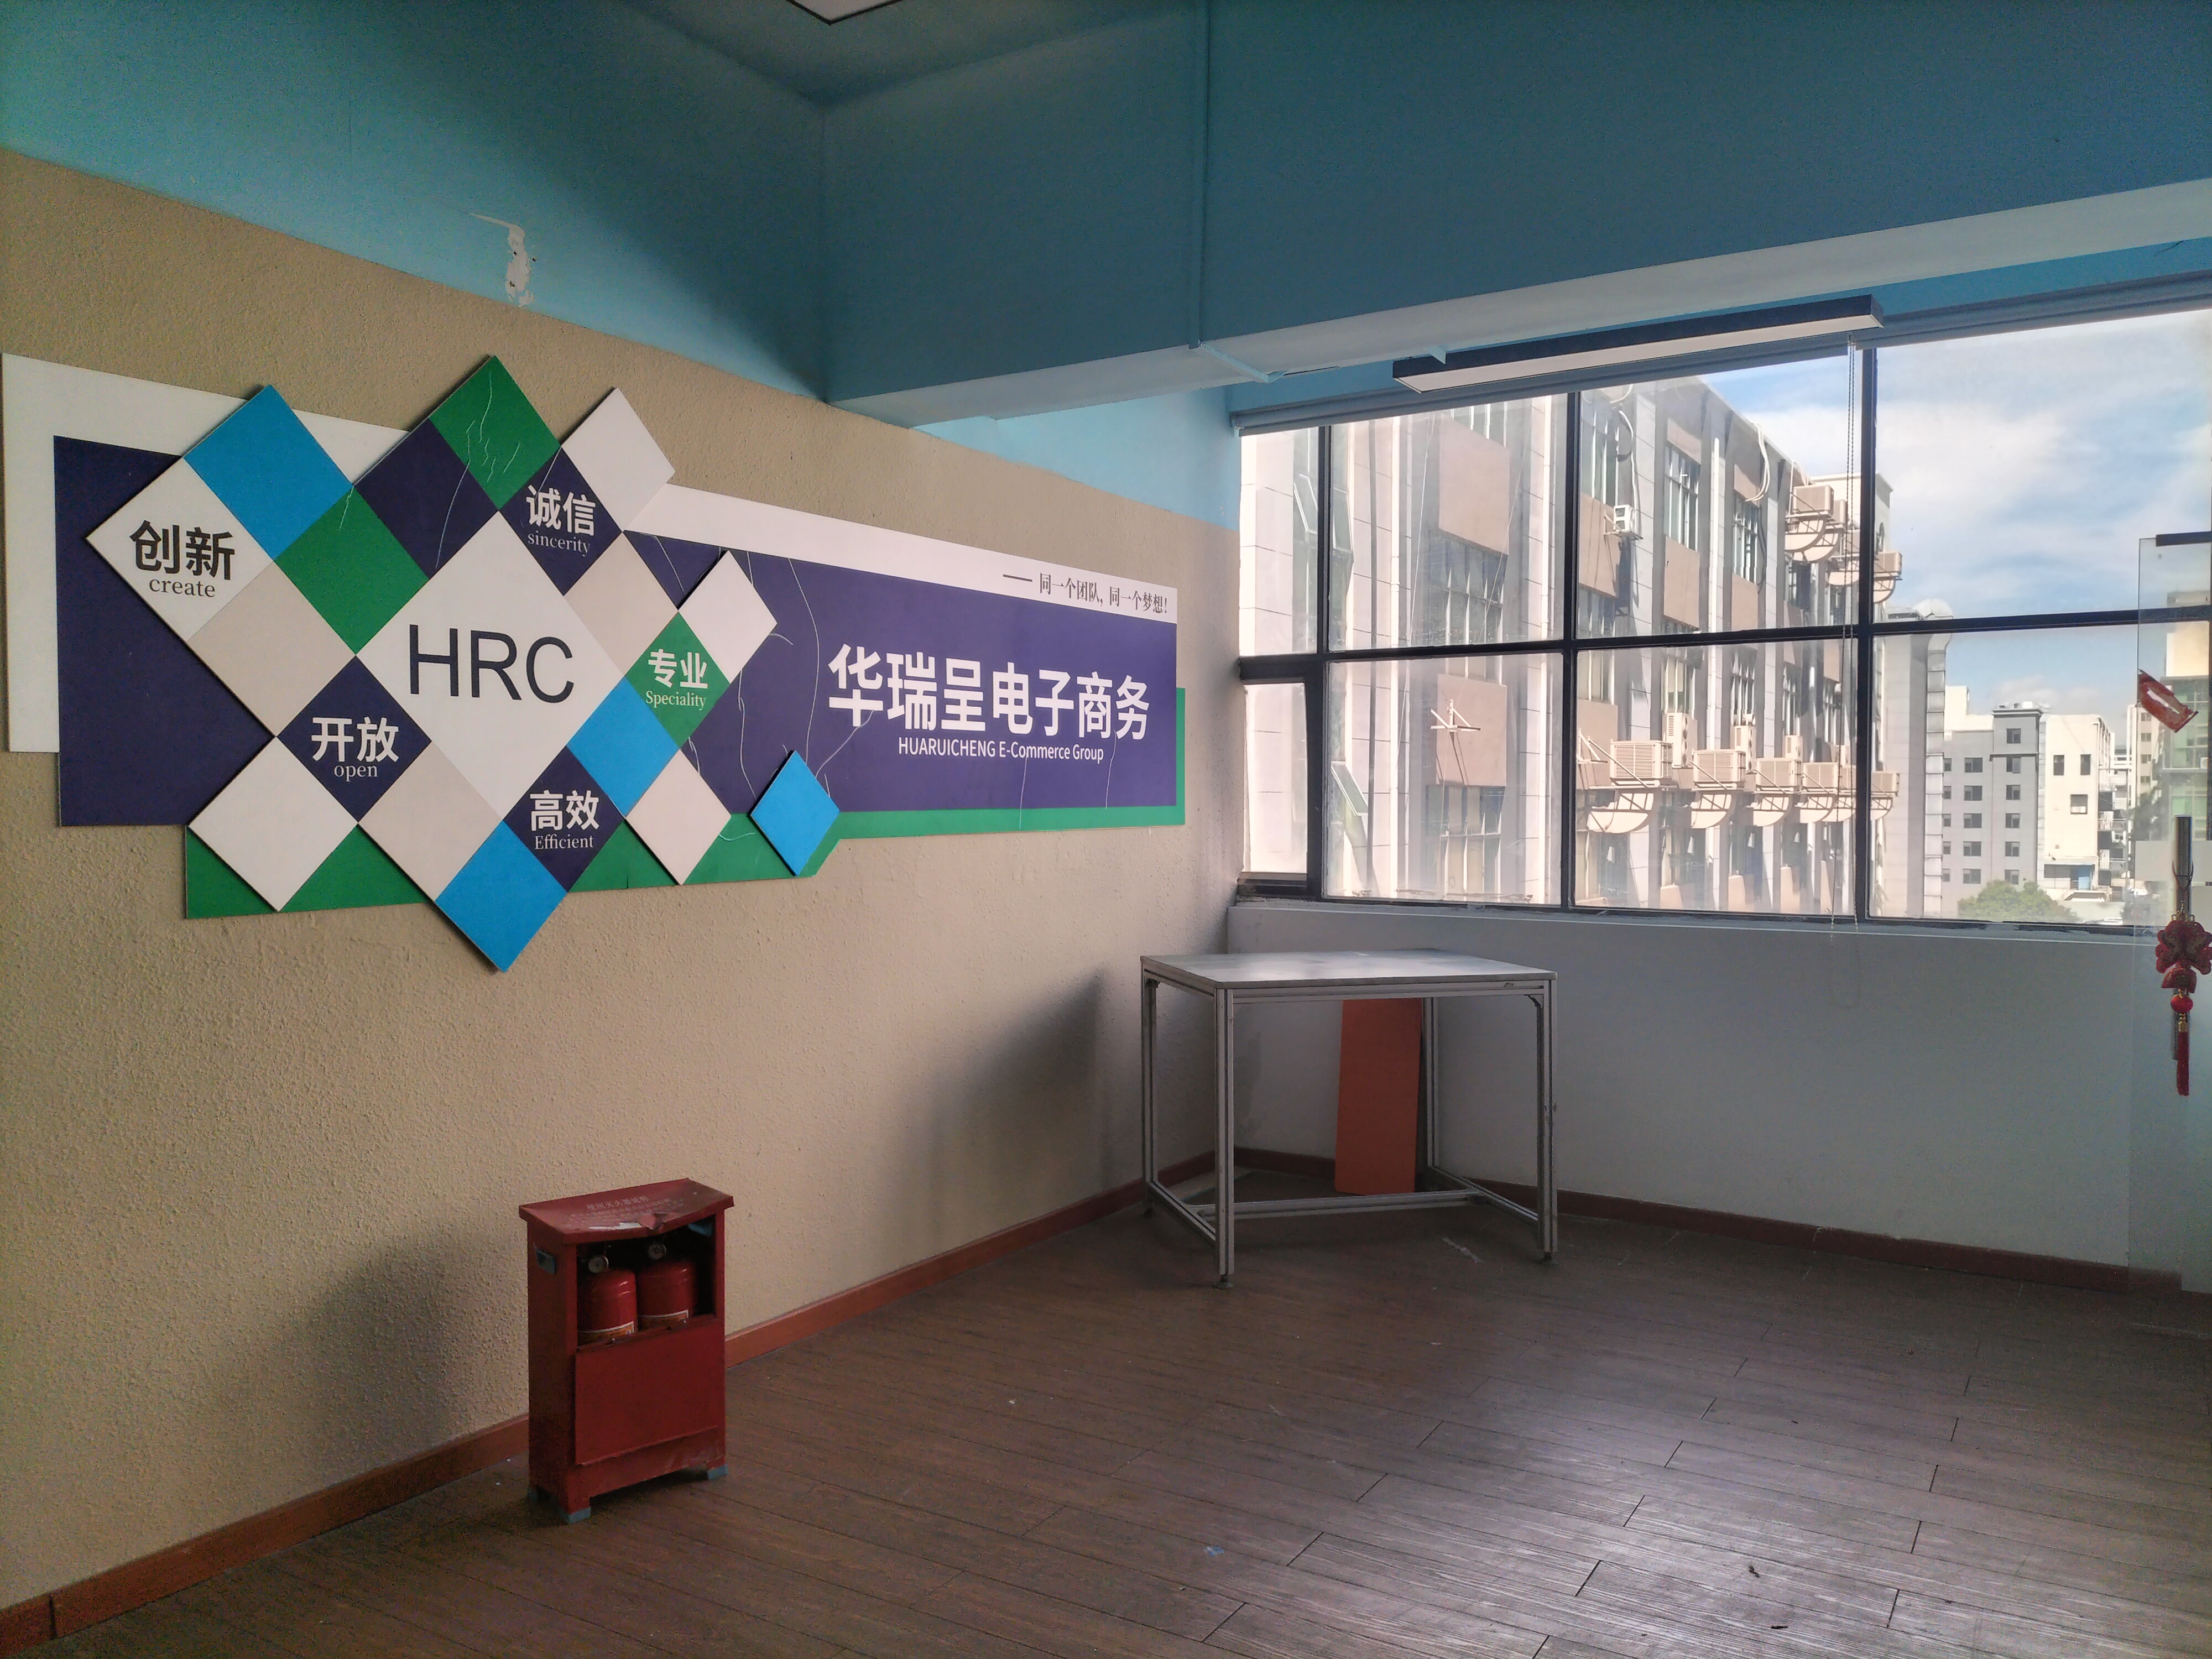 福永桥头地铁站附近300平方厂房低价出租可仓库物流办公室研发